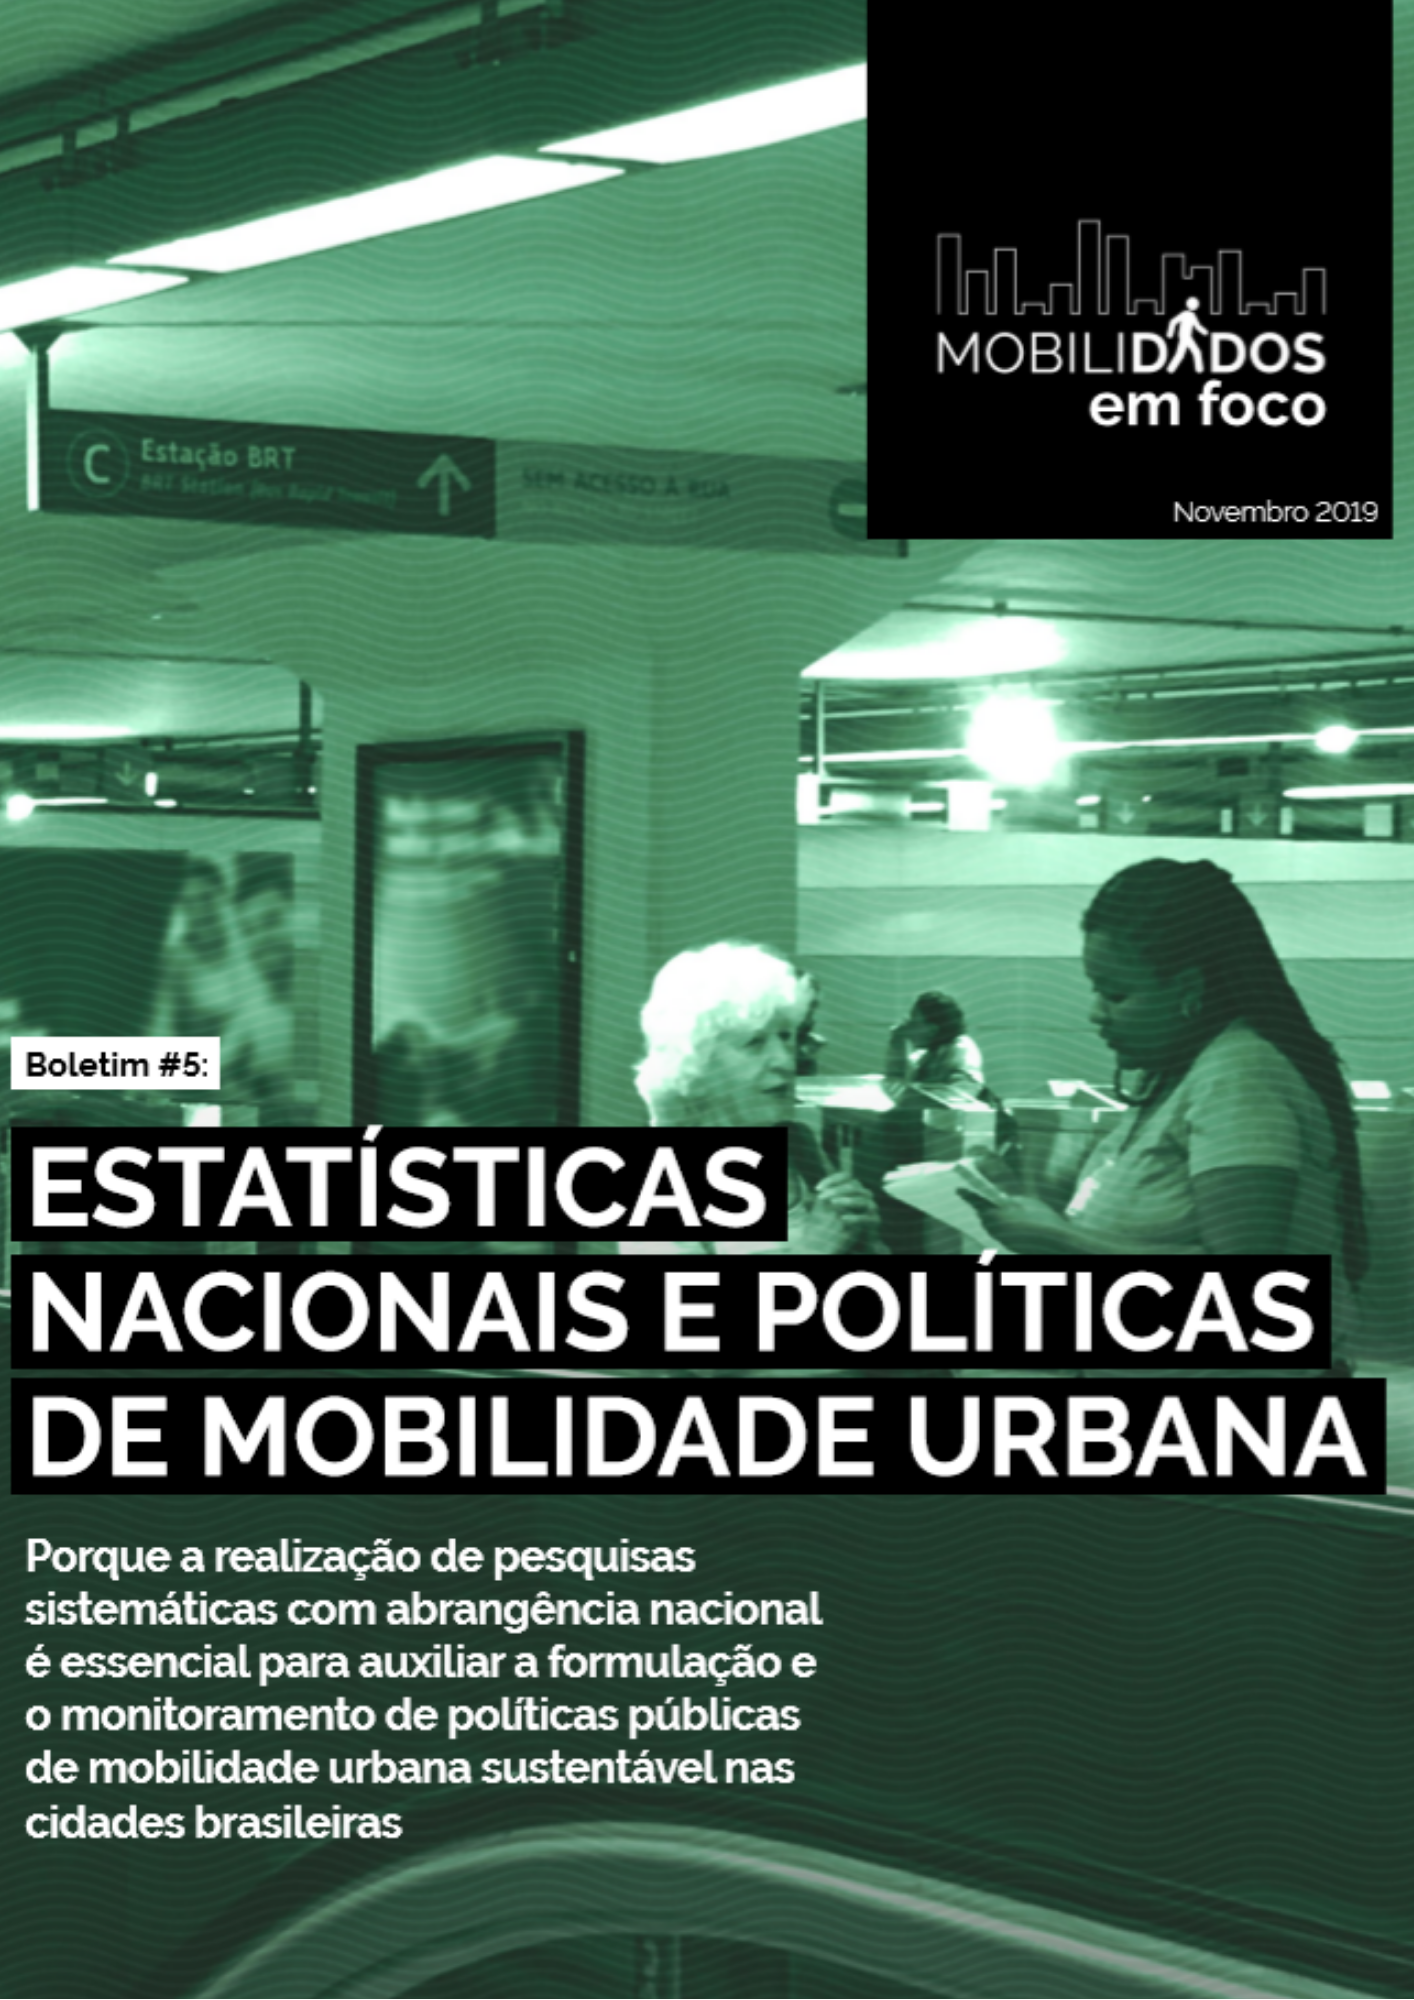 Boletim #5 MobiliDADOS: estatísticas nacionais e políticas de mobilidade urbana